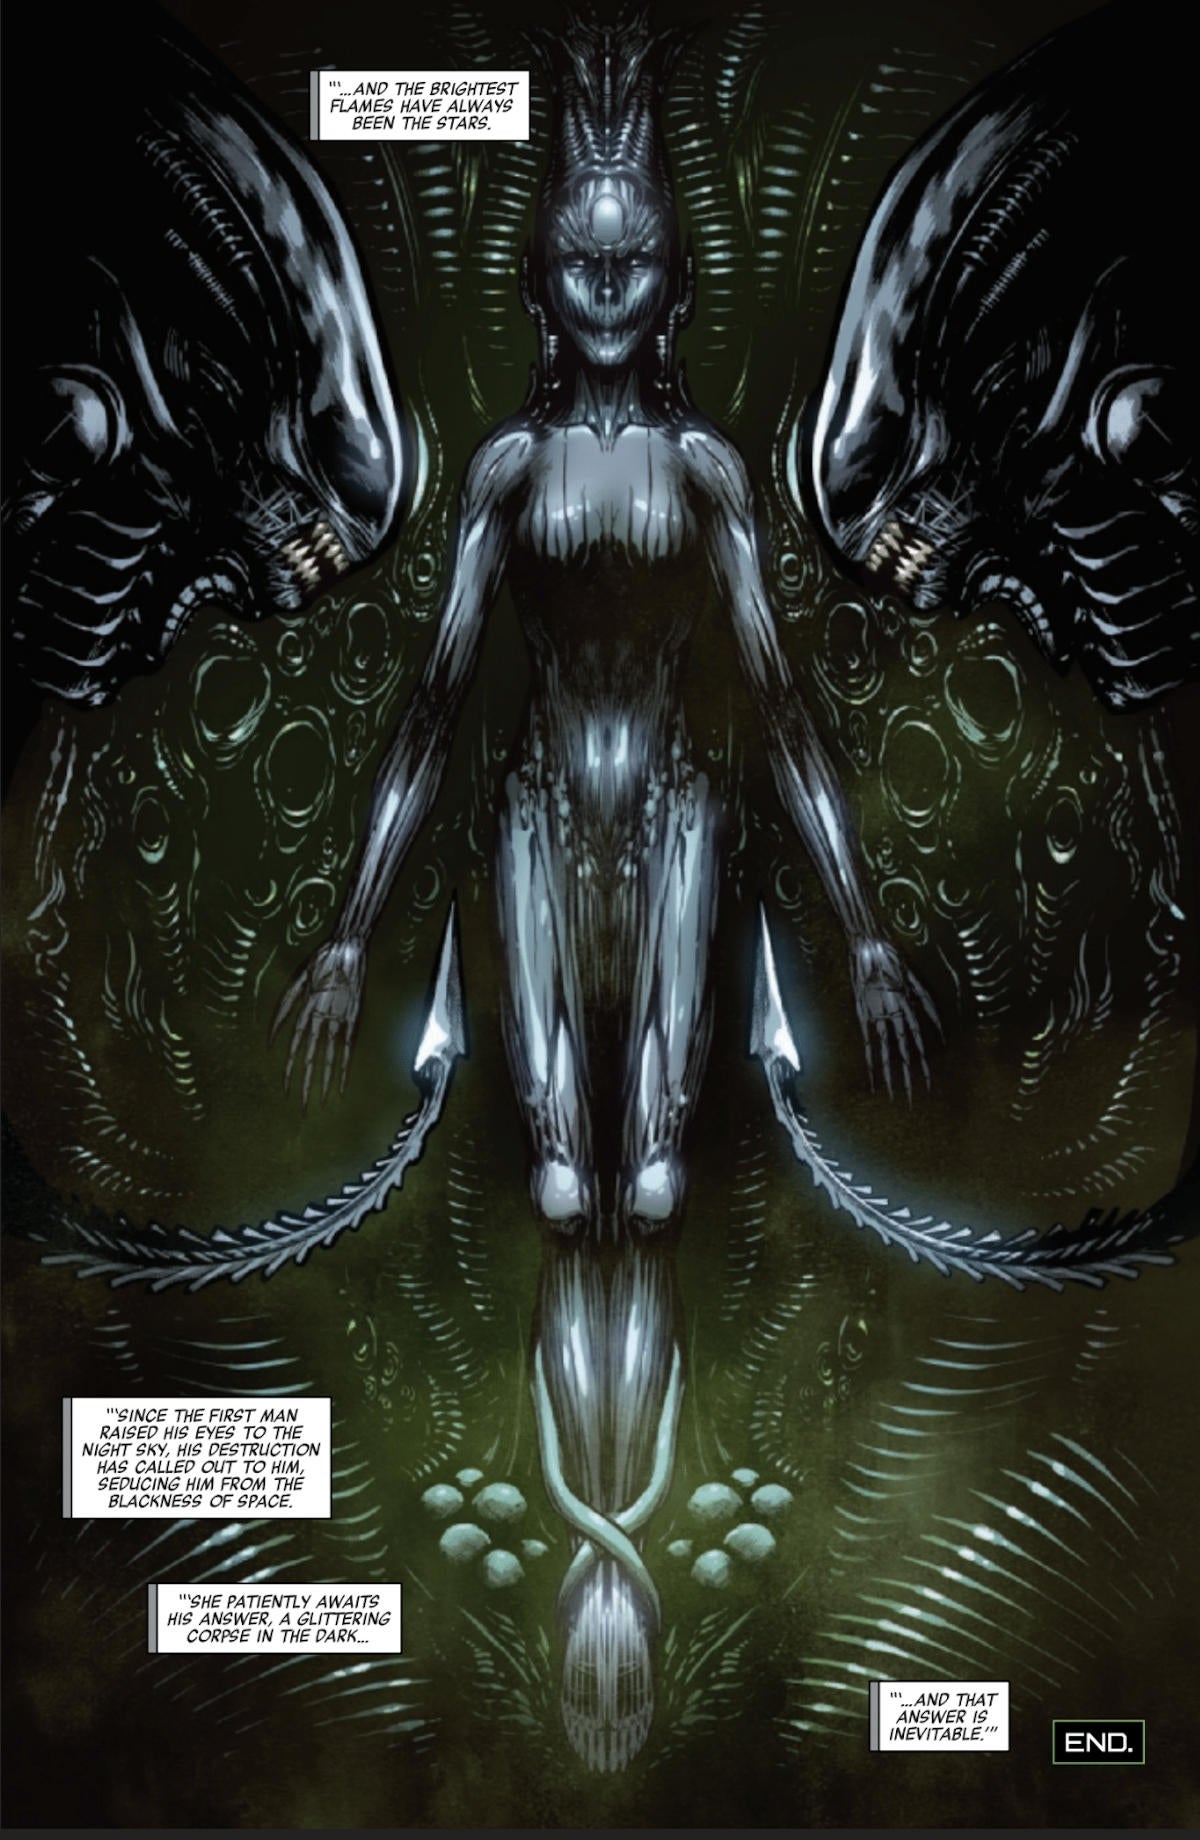 alien-2022-comic-ending-explained-xenomorph-android-synthetic-hybrid.jpg